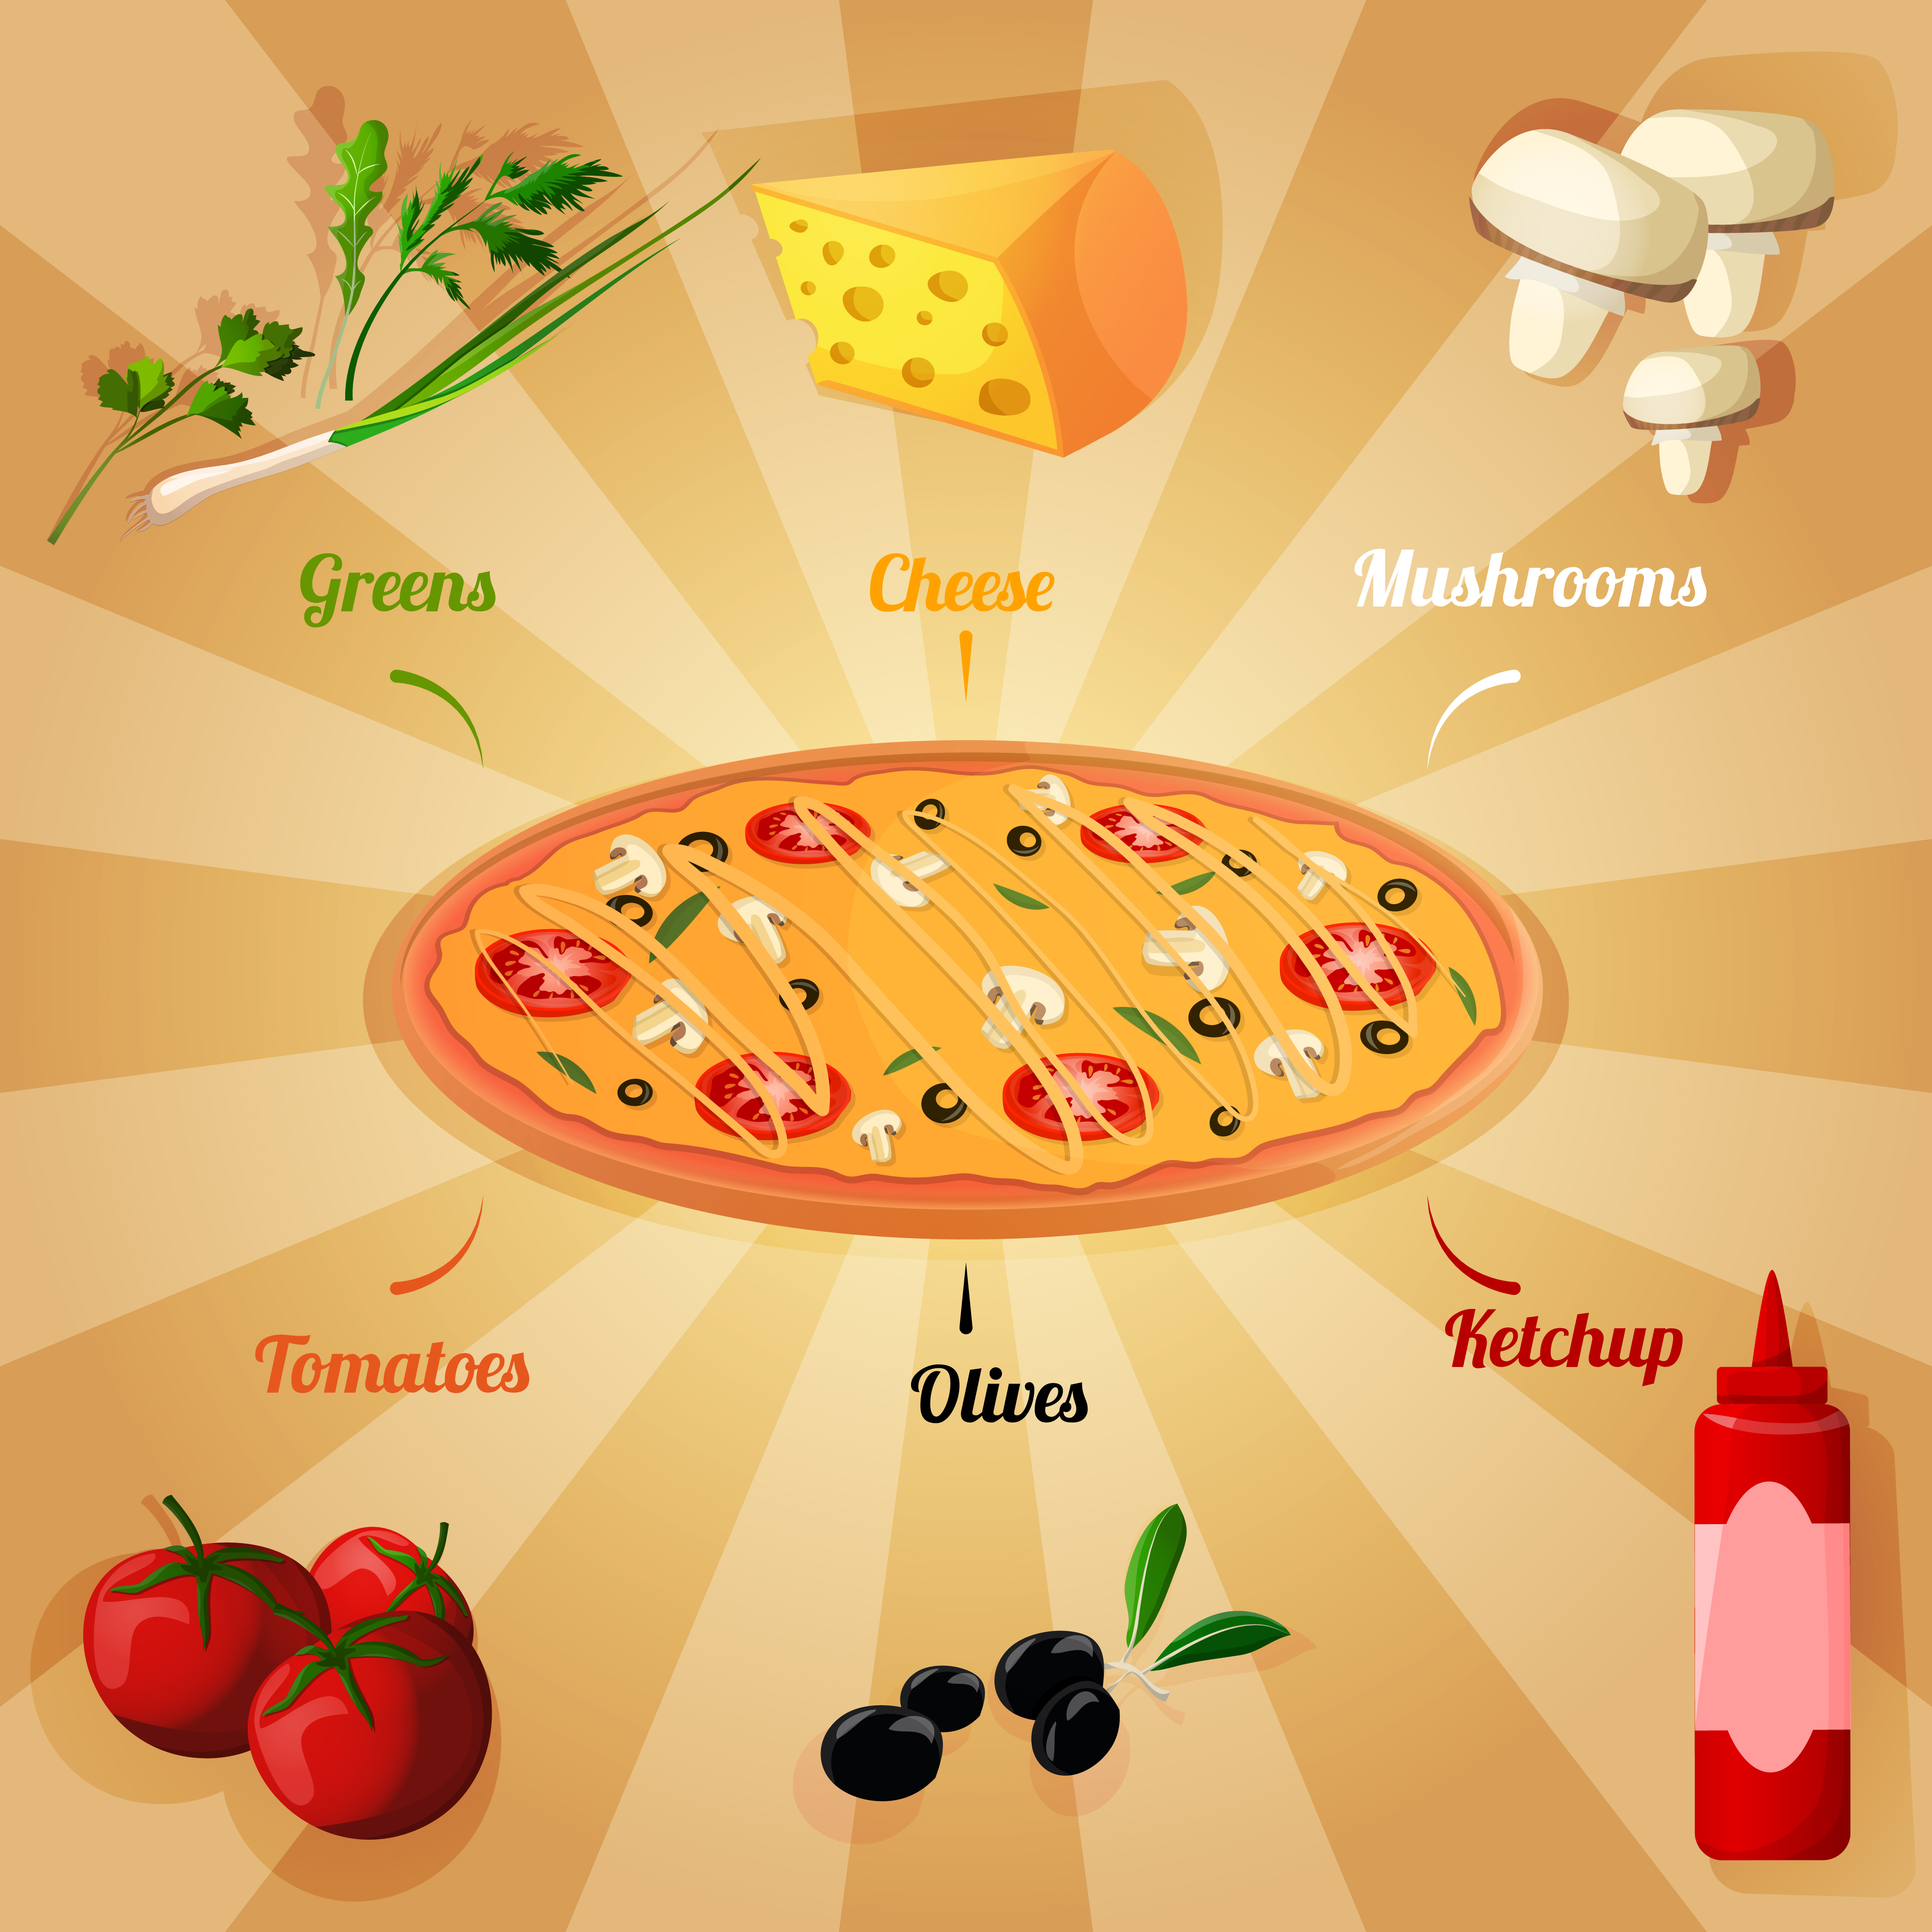 рецепт пиццы 4 сыра на английском языке фото 11